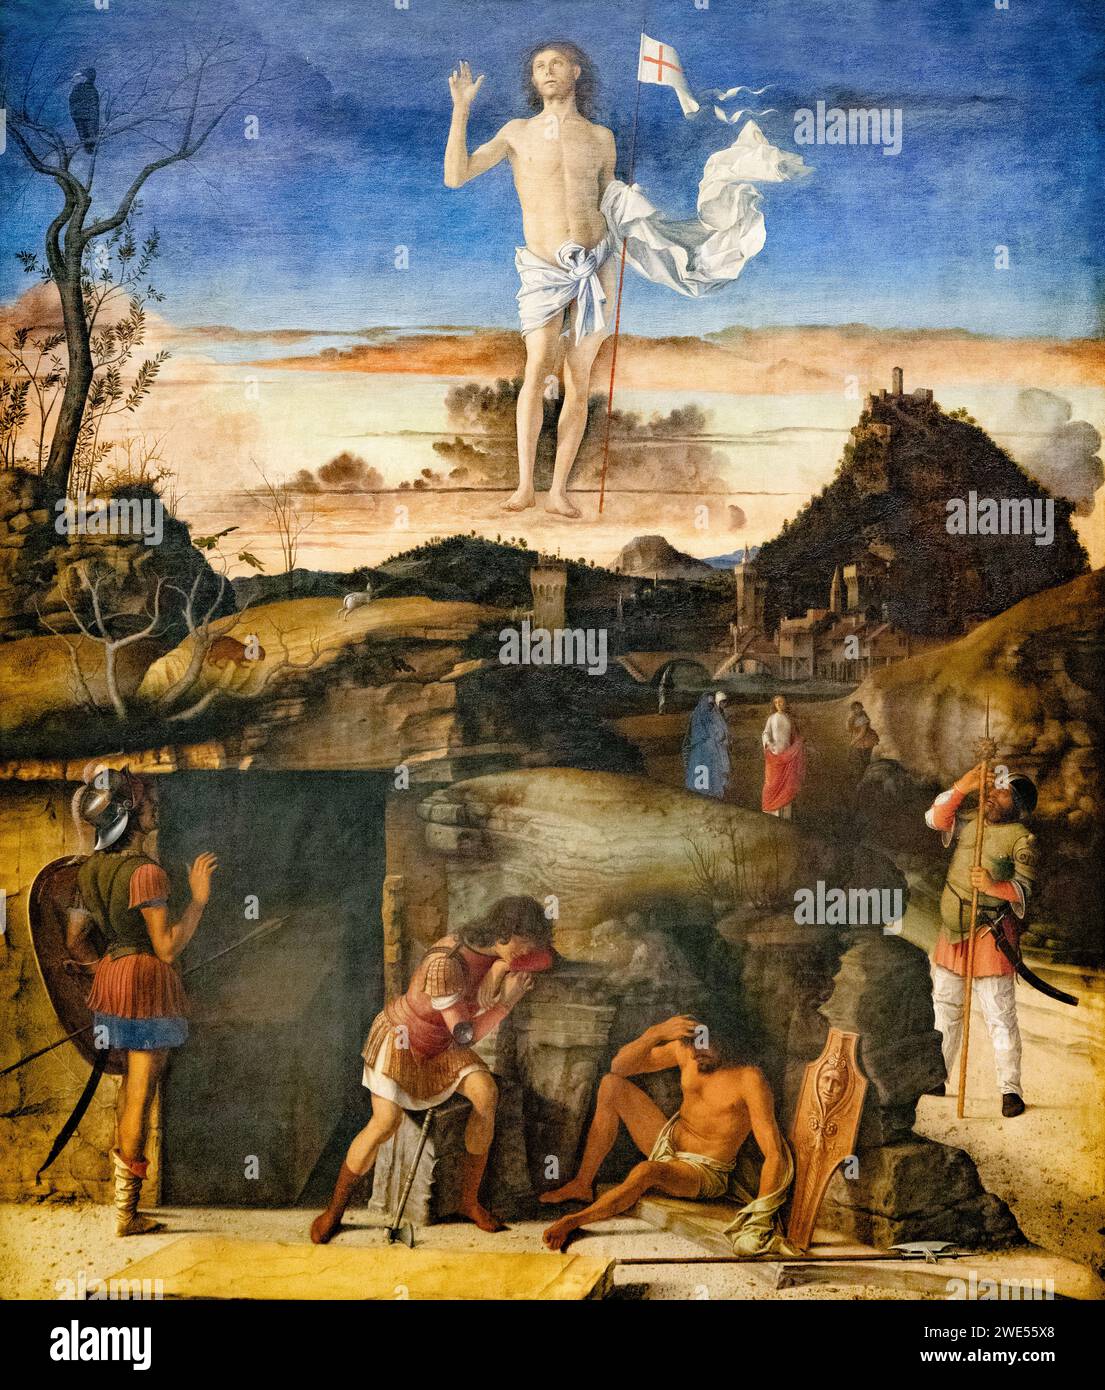 Giovanni Bellini pittura, "la Resurrezione di Cristo", 1475-79, arte rinascimentale italiana, Gemaldegalerie Berlin Foto Stock